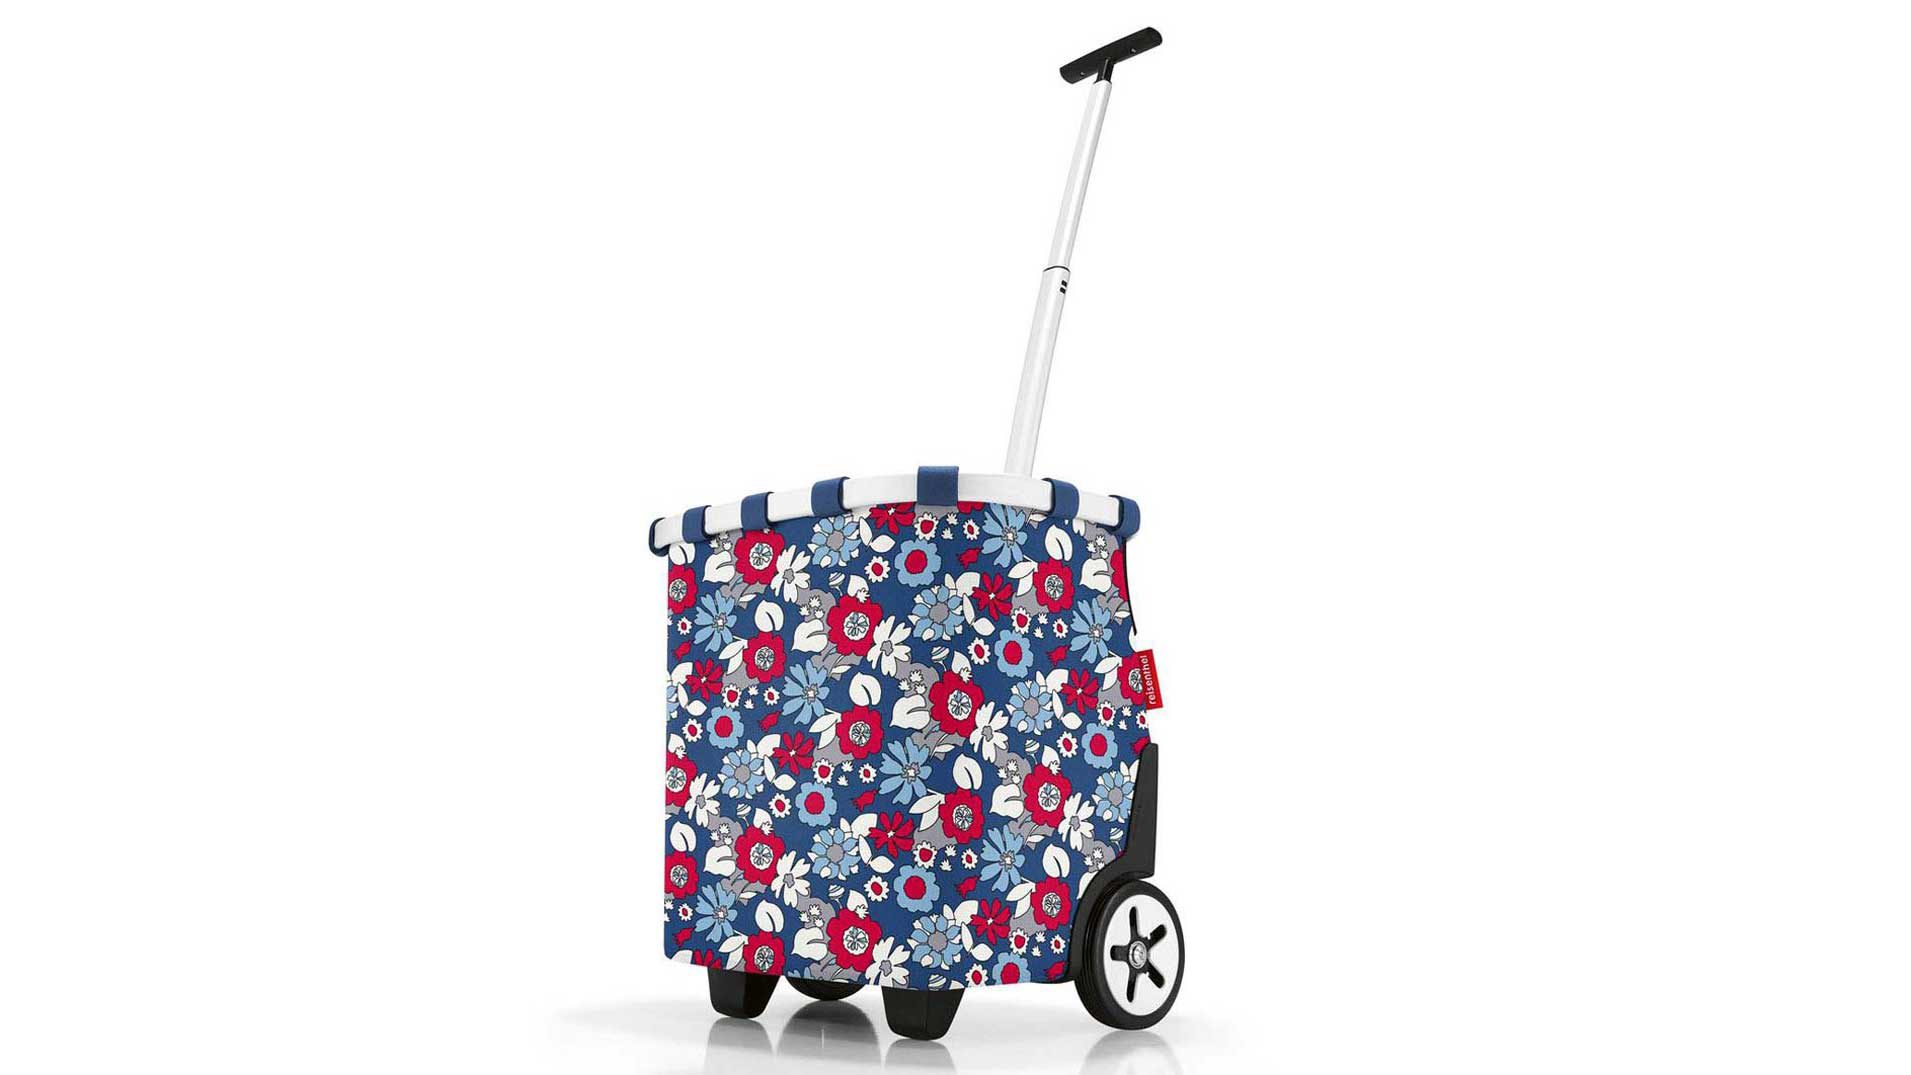 Einzeltasche Reisenthel aus Kunstfaser in Mehrfarbig Reisenthel Carrycruiser OE 4094 Trolley Einkaufstrolley florist indigo, 42 x 47,5 x 32 cm